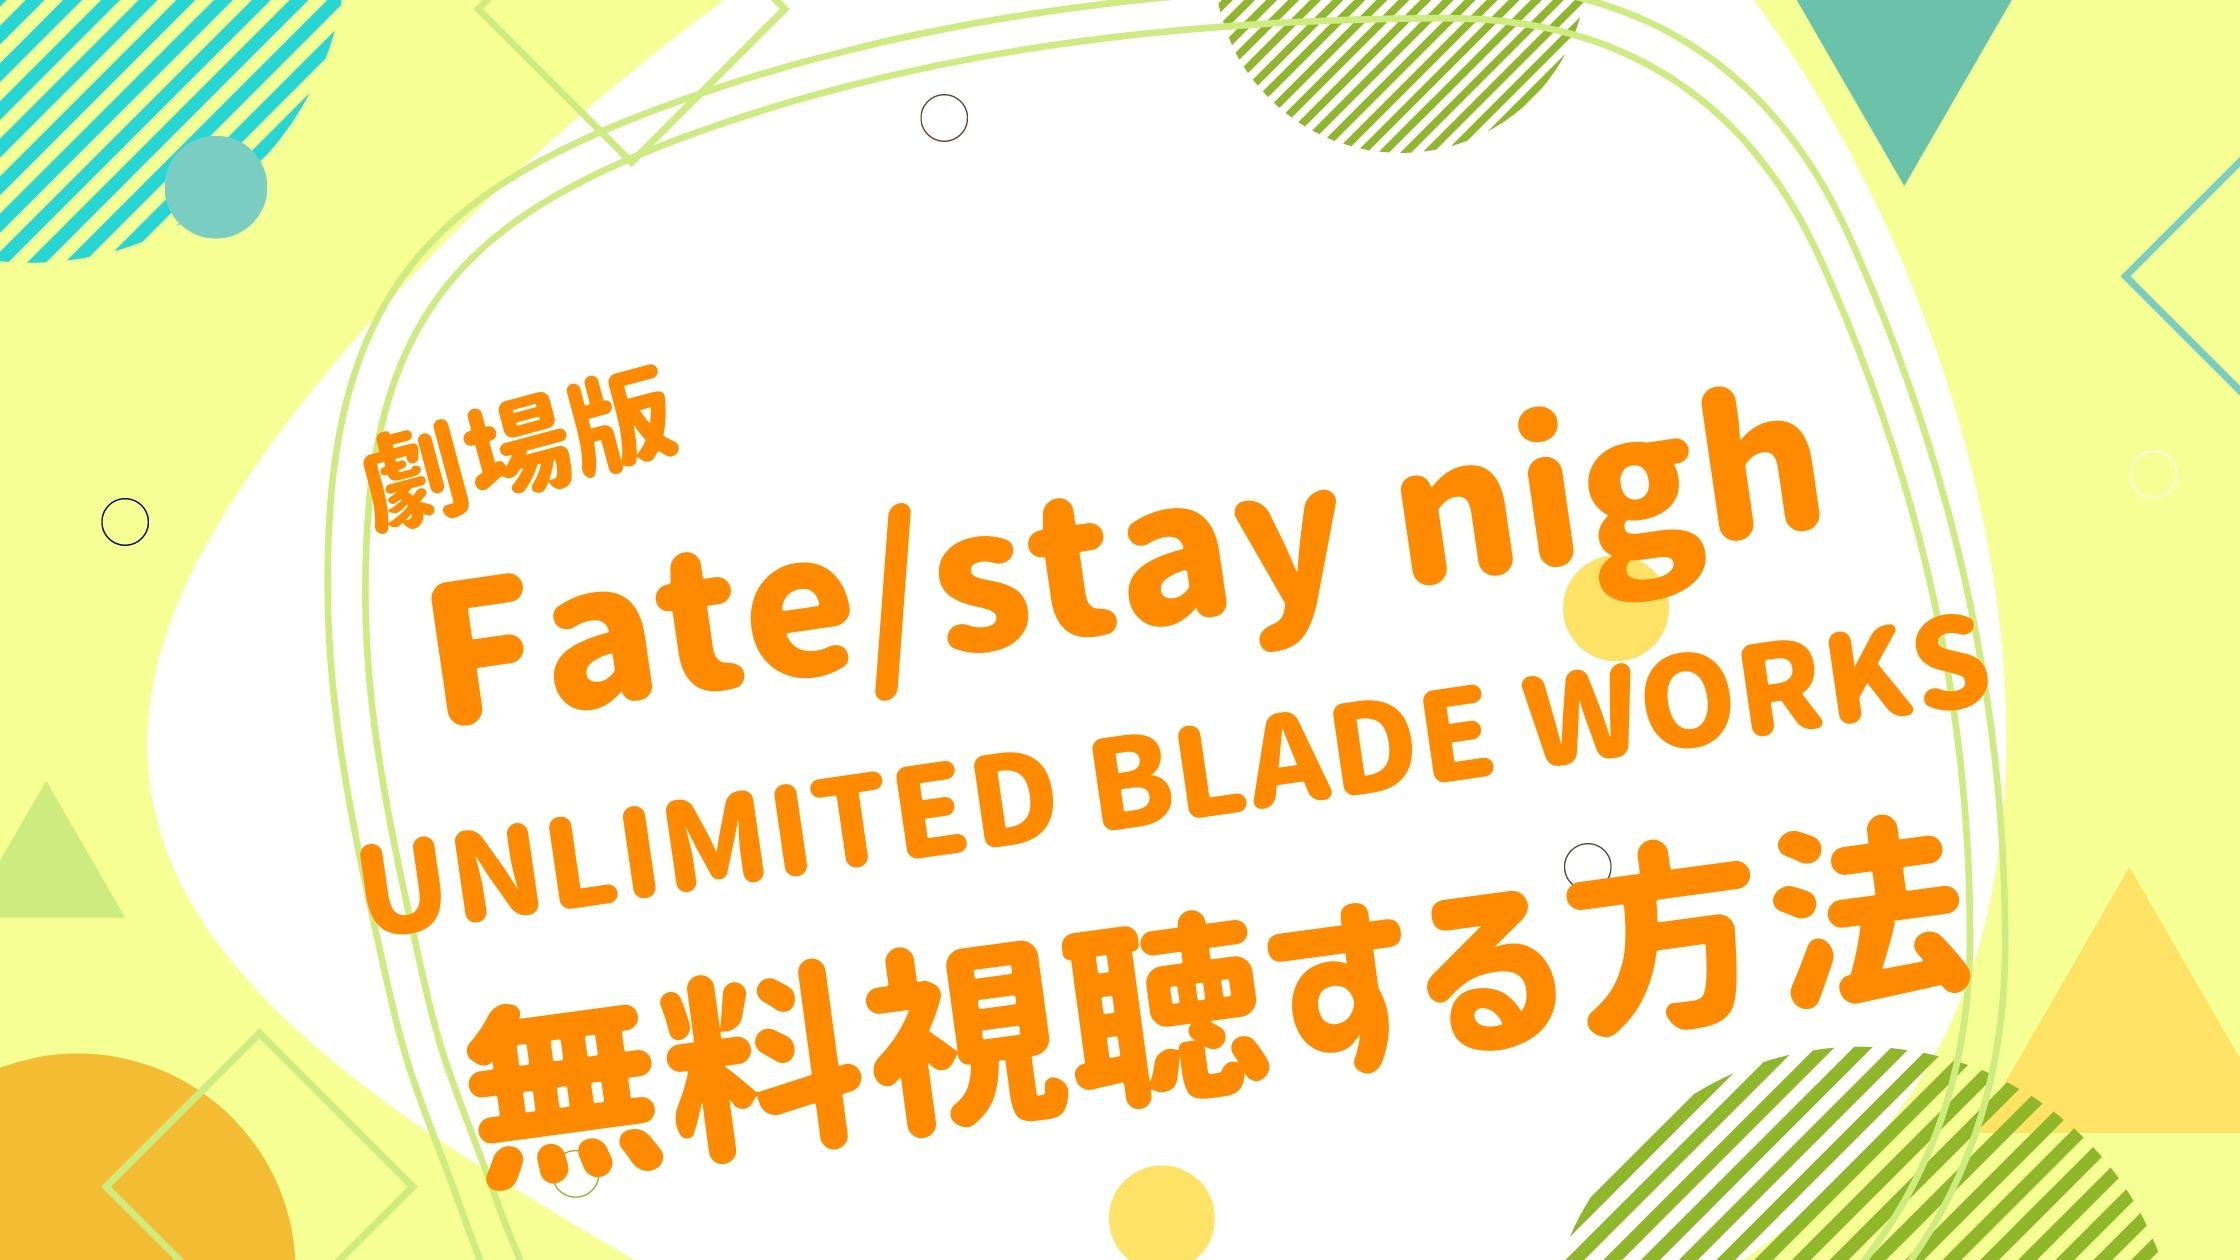 劇場版 Fate Stay Night Unlimited Blade Works映画 Fate Stay Night Unlimited Blade Works の無料動画をフル視聴できる配信サイトまとめ アニメ映画無料動画まとめサイト ベクシル